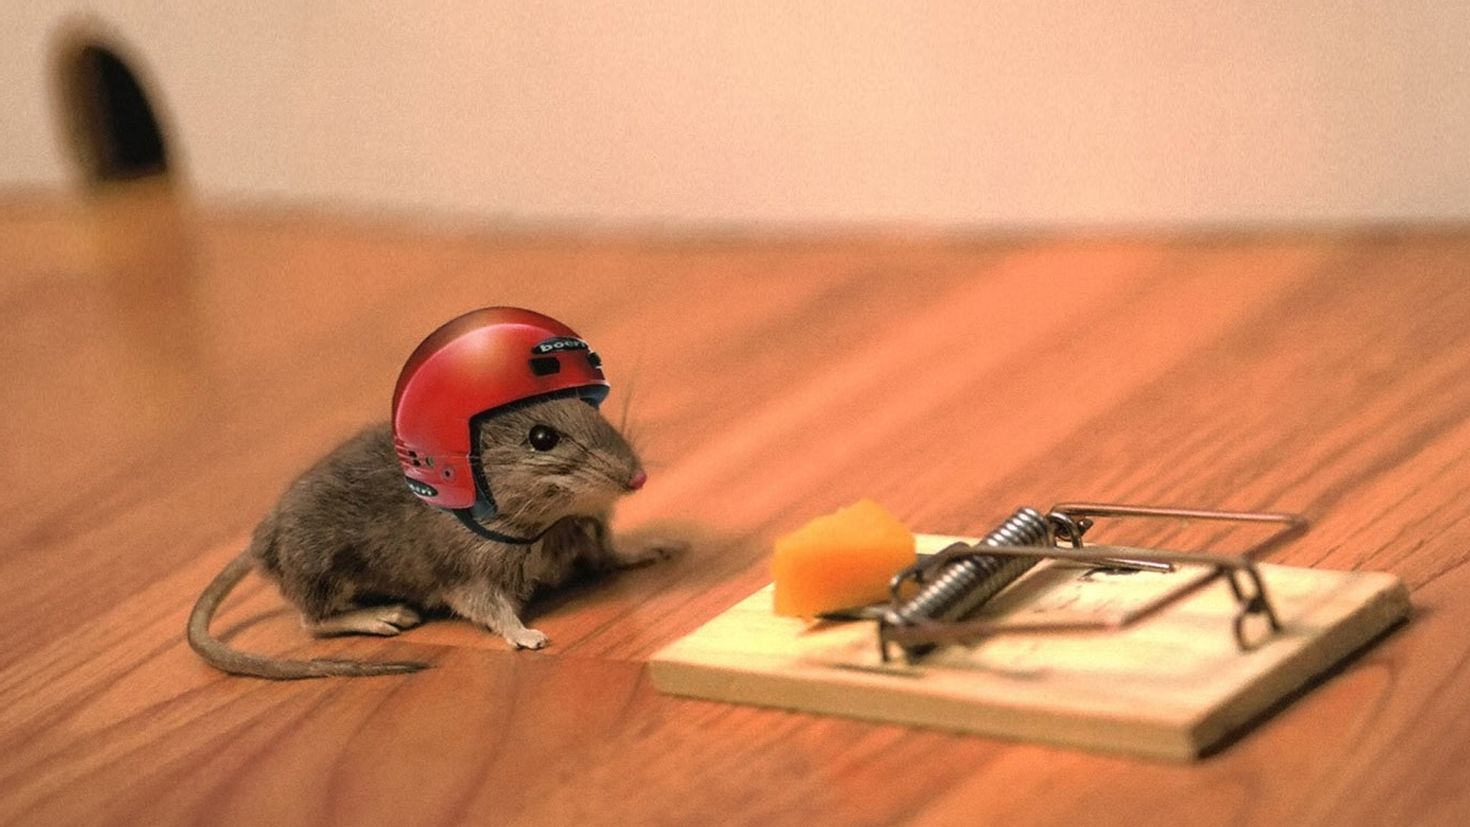 Рабочая мышь. Мышь в мышеловке. Мышь в каске. Крыса в шлеме. Мышь на столе.